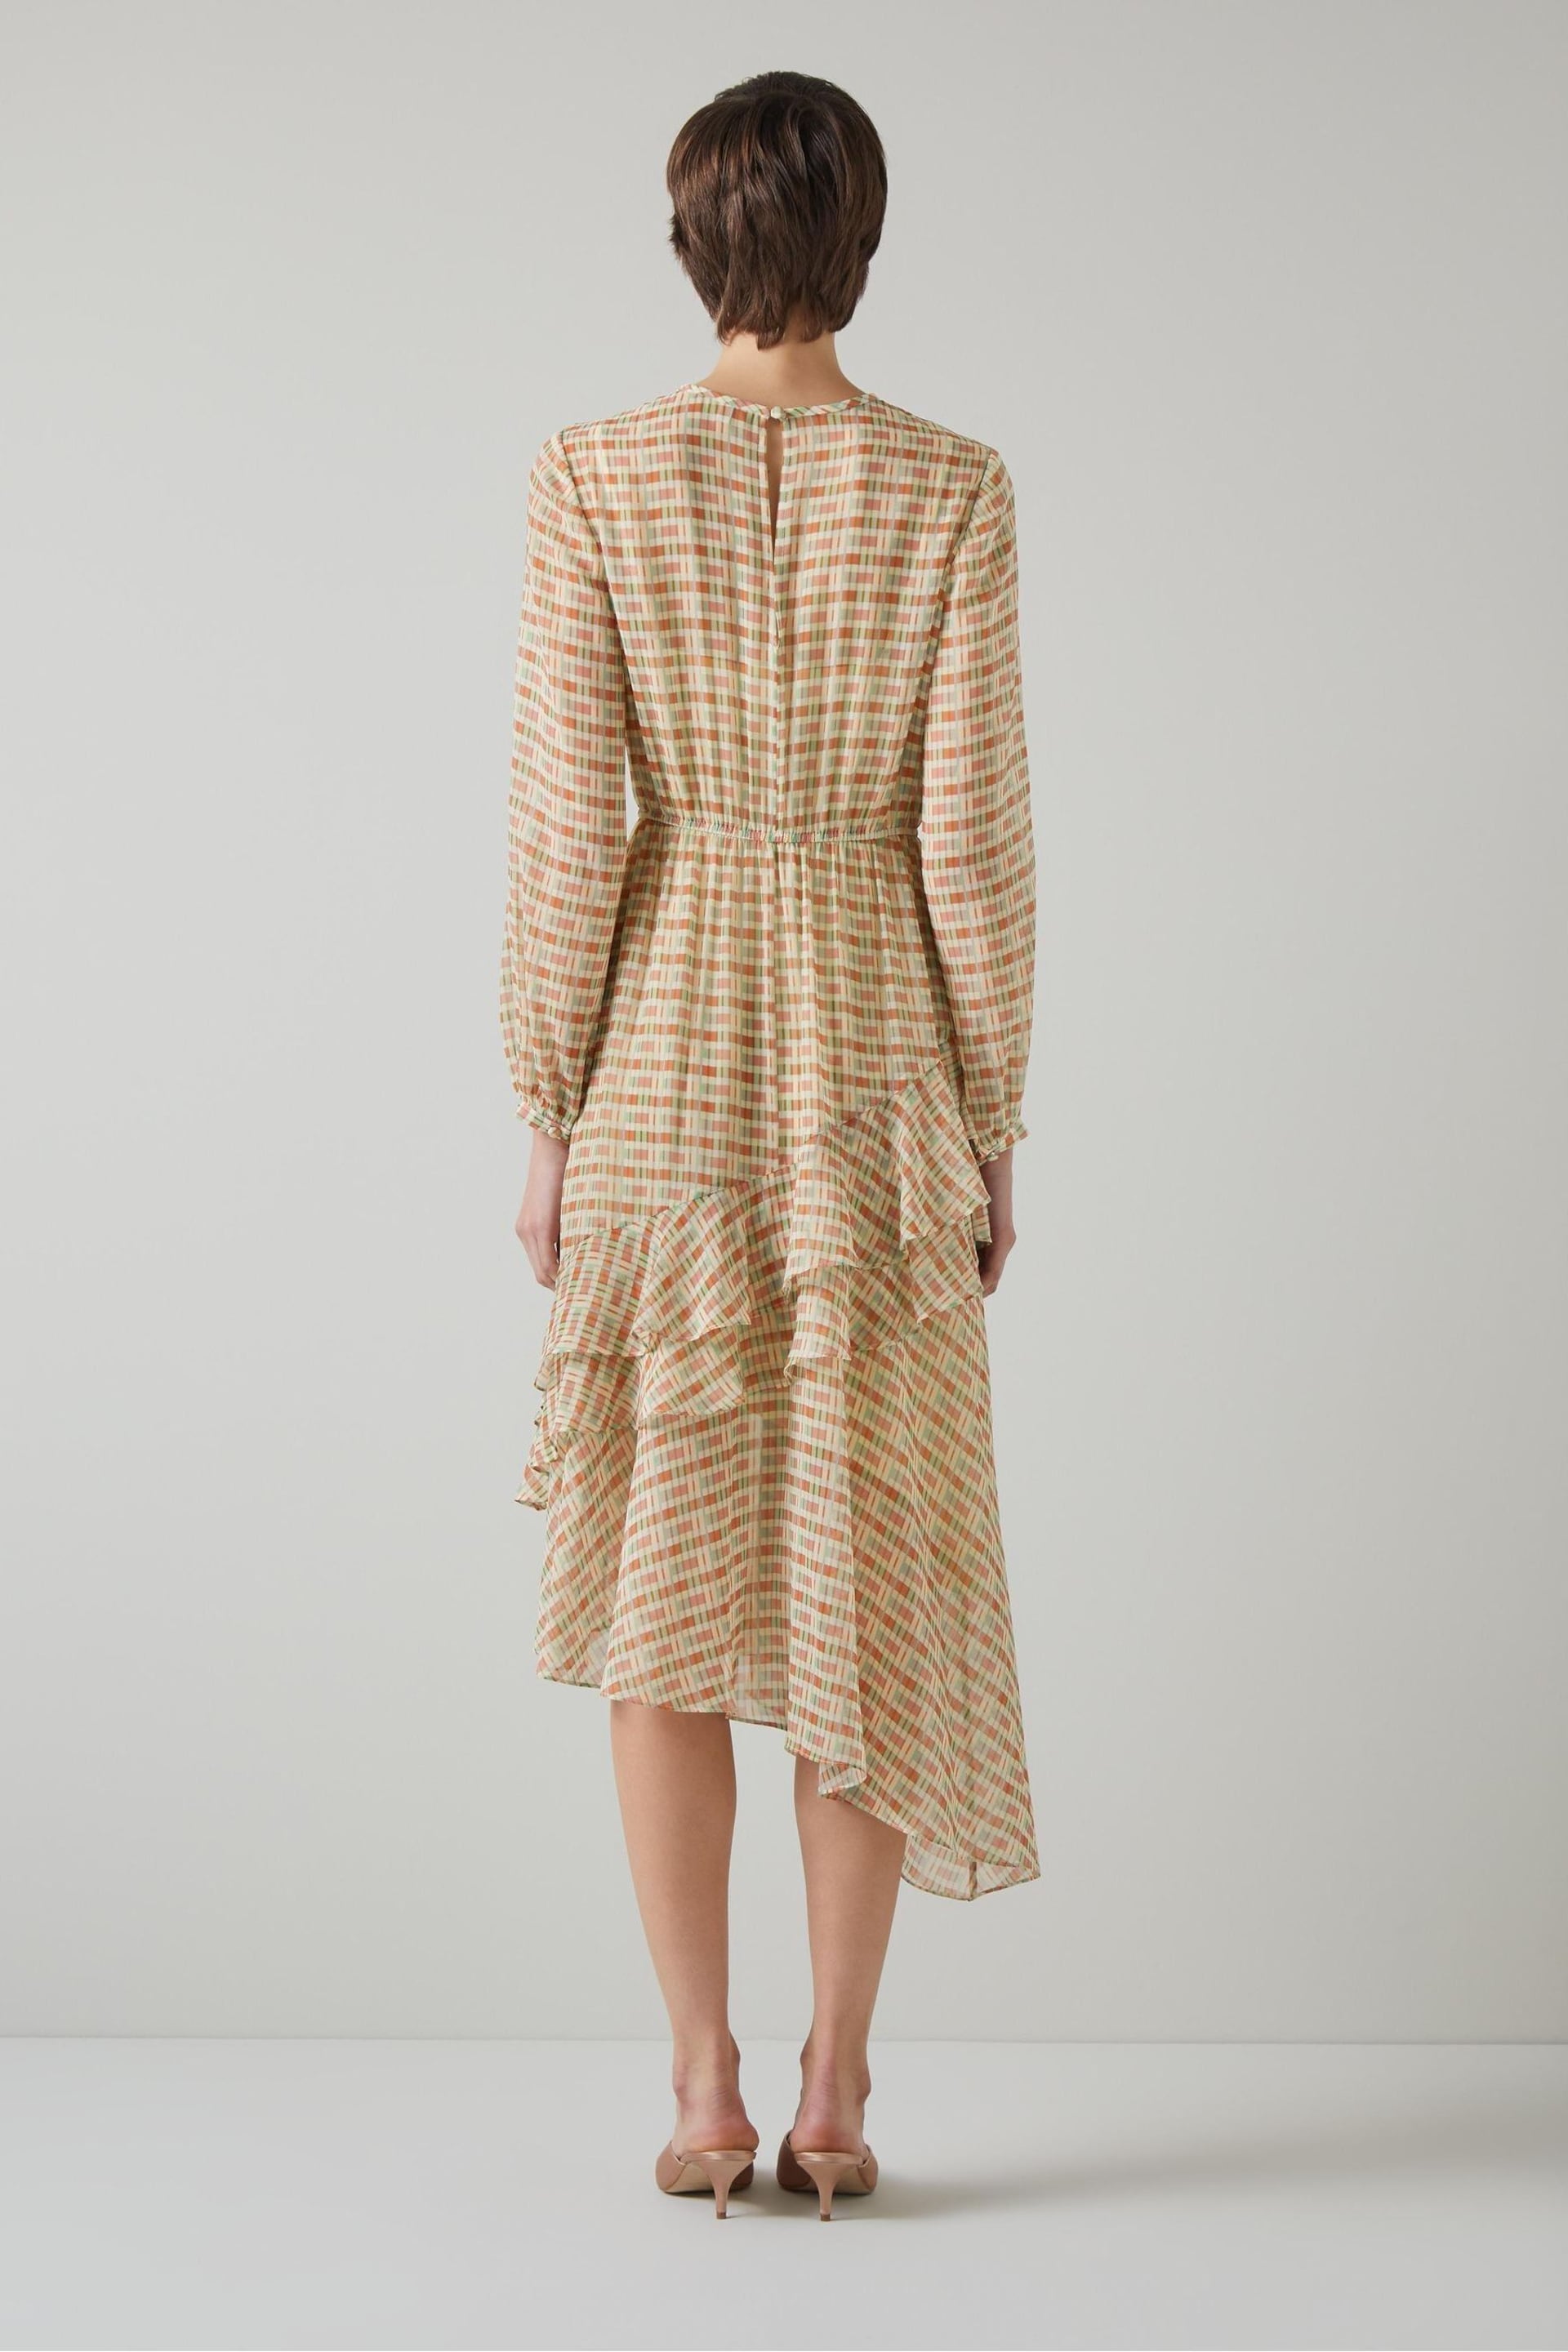 LK Bennett Mini Bea Check Silk Chiffon Ruffle Dress - Image 2 of 5